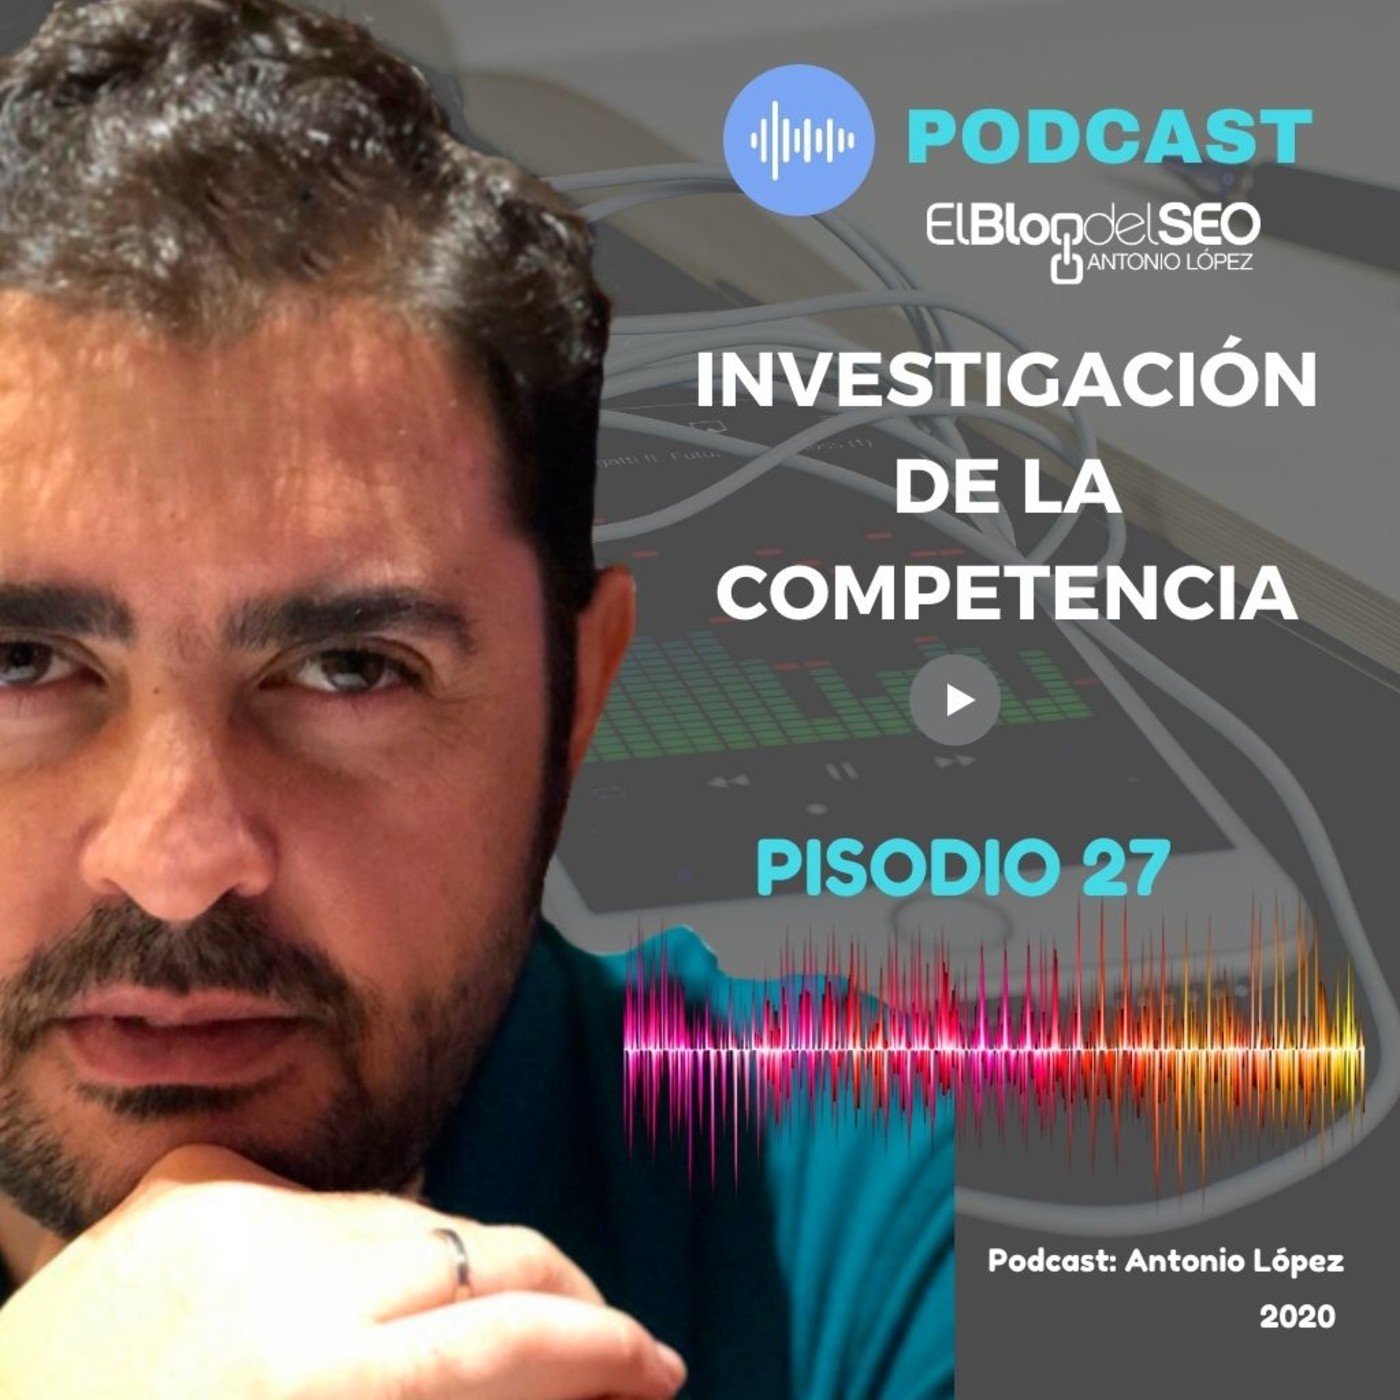 Investigación de la Competencia. Episodio 27. Podcast Elblogdelseo